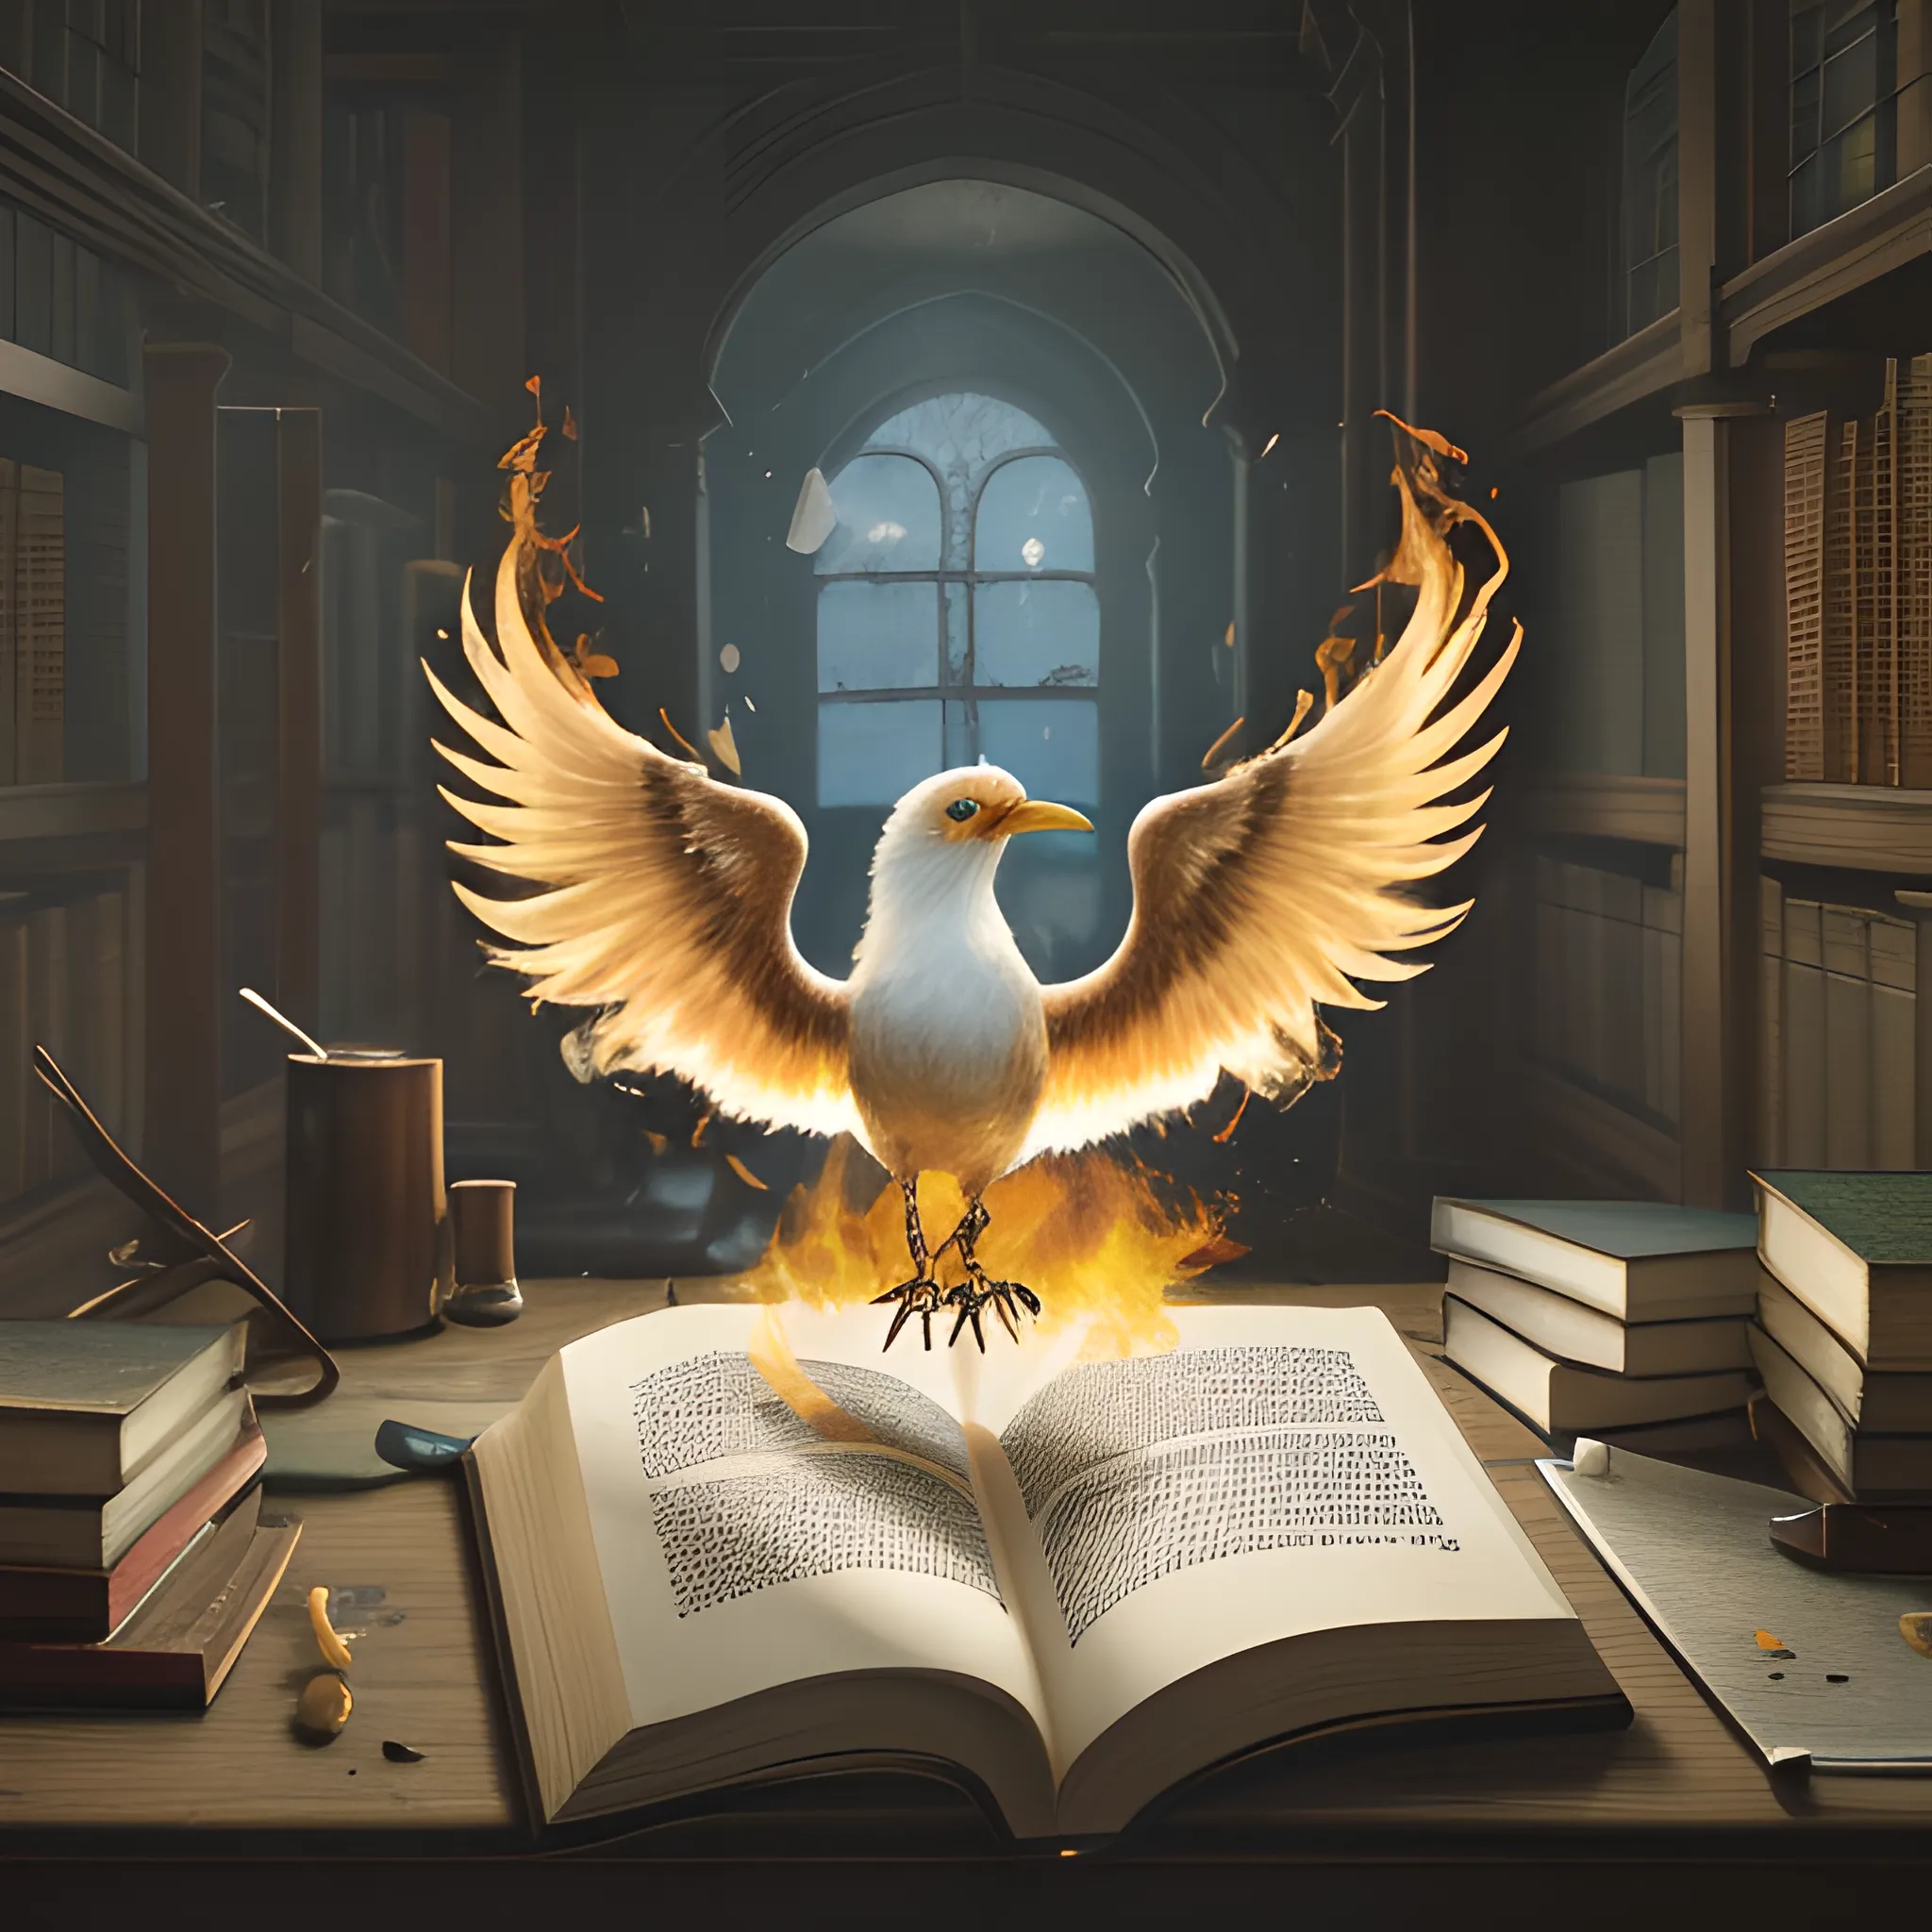 Phoenix alighting on top of an open book